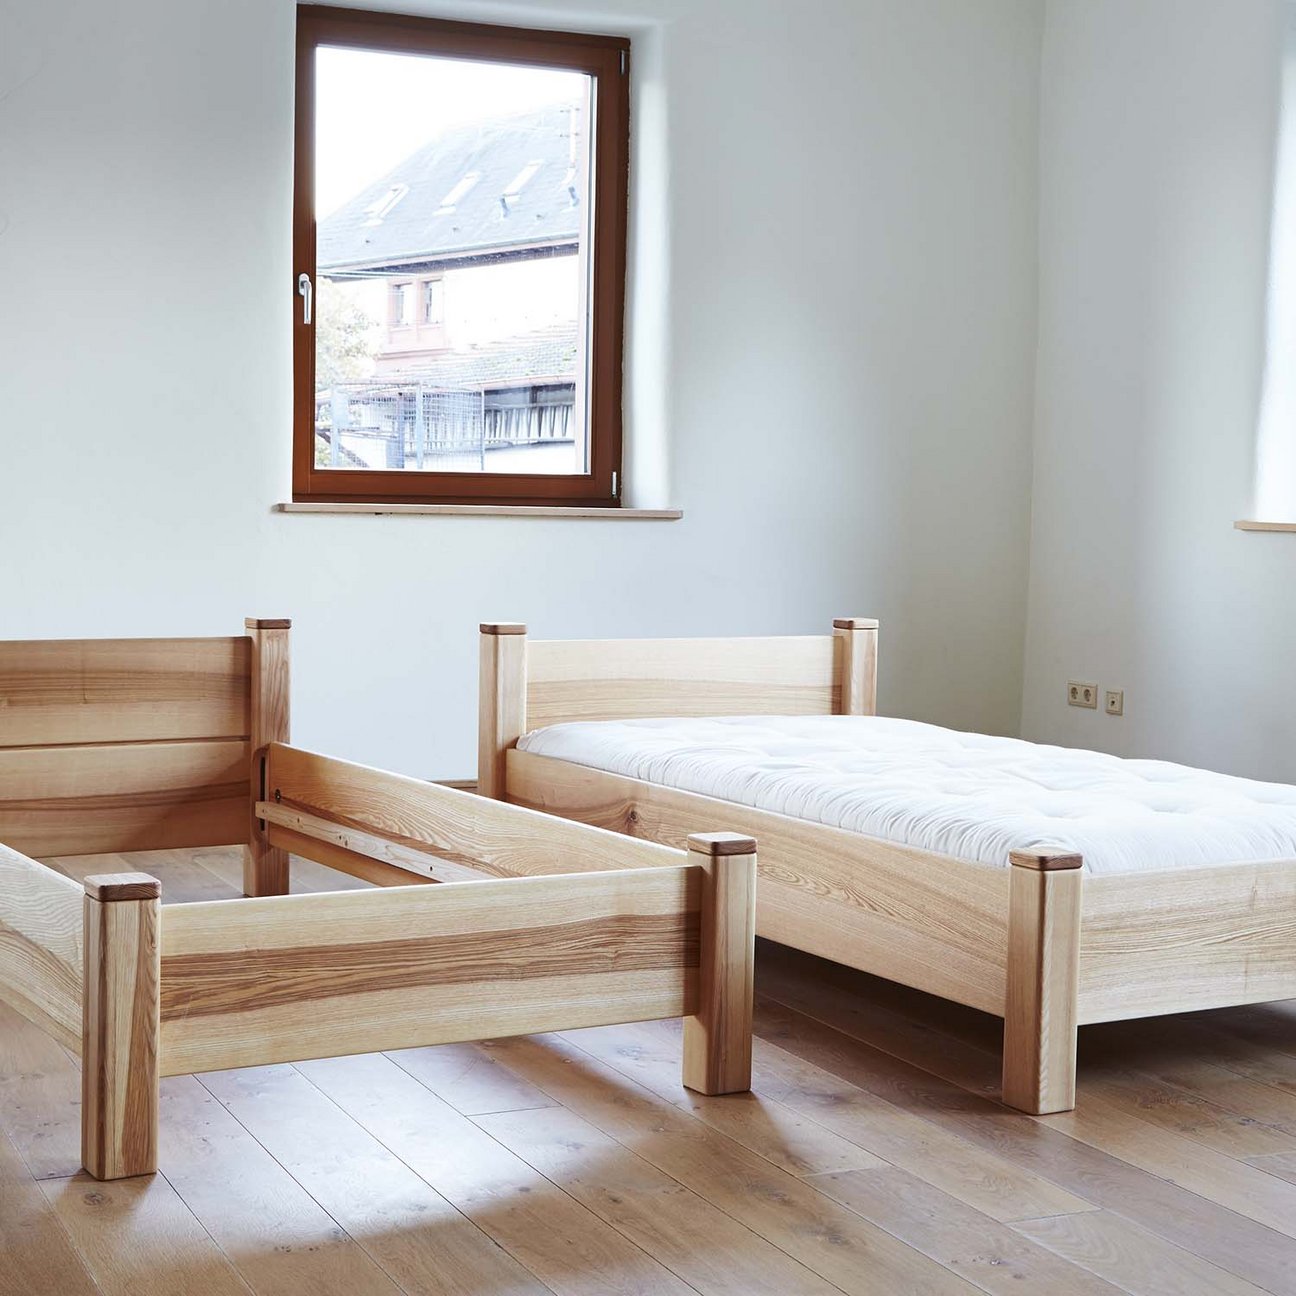 Tischlerei Baum Natur baut Betten aus Massivholz